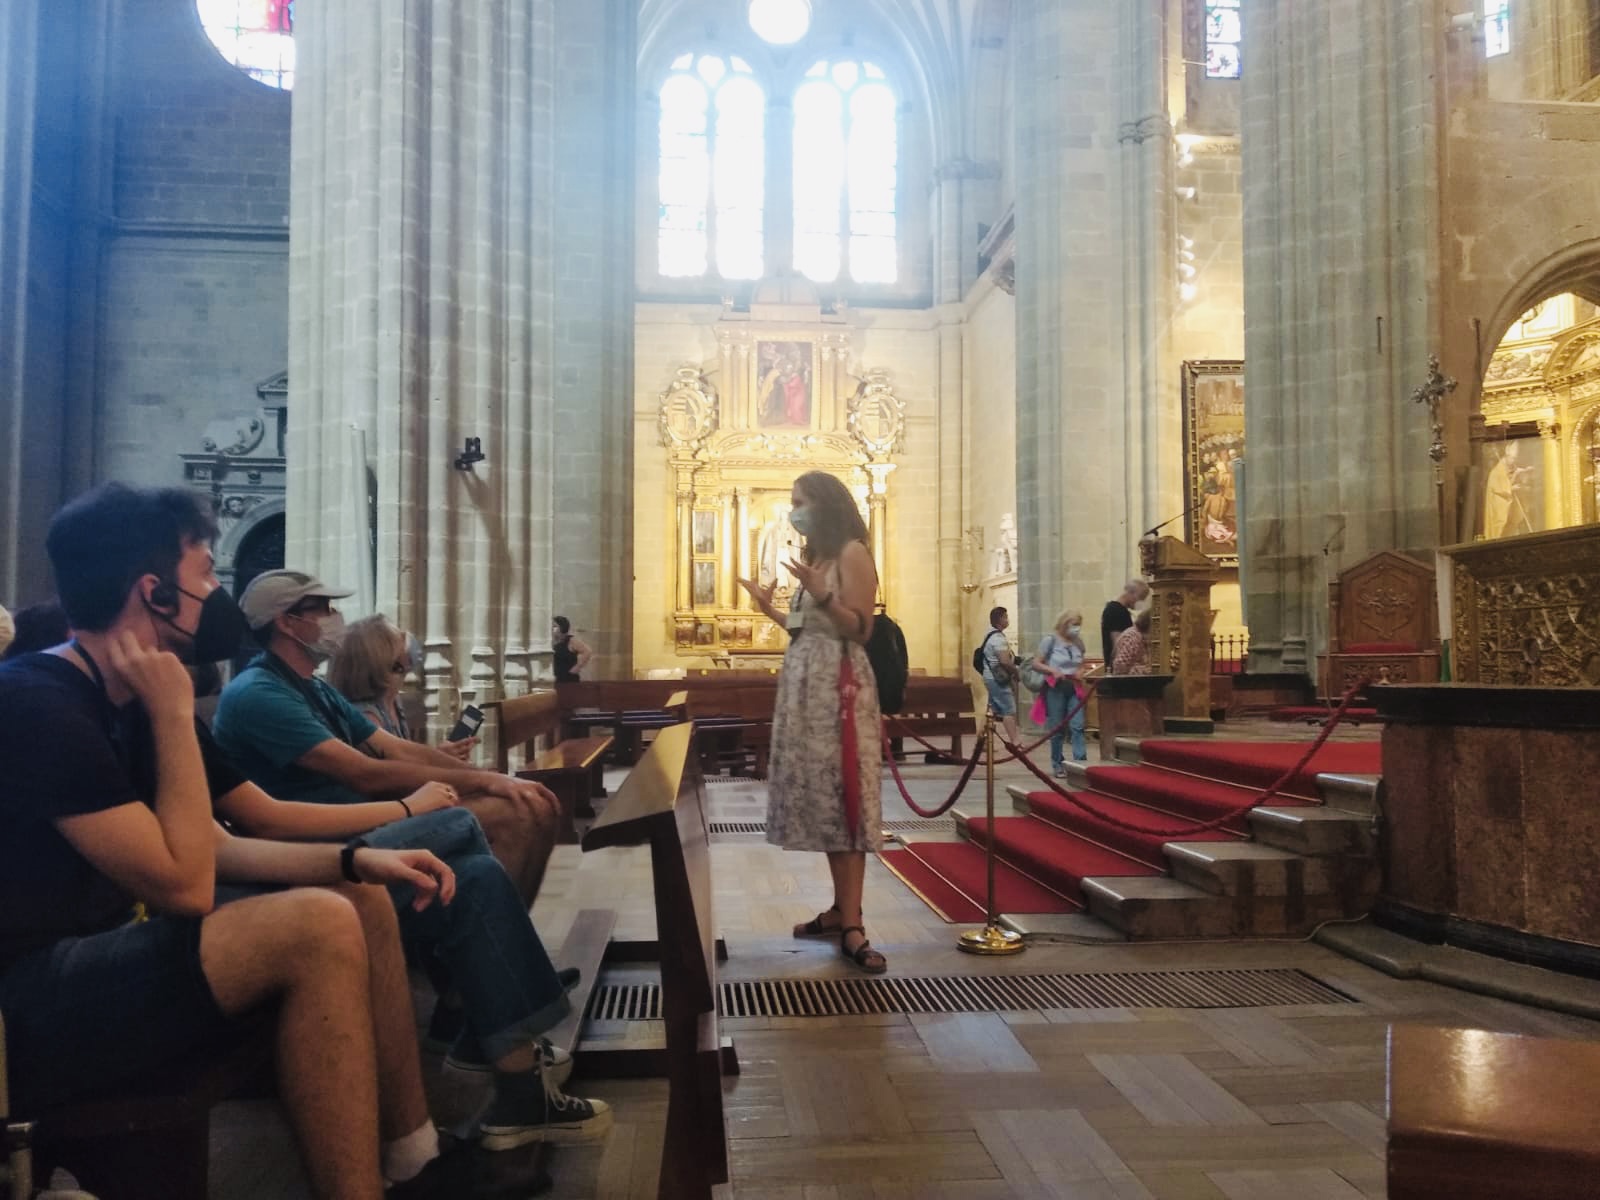 Visita guiada al Palacio Episcopal, obra del arquitecto catalán Antonio Gaudí, y a la Catedral de Santa María. Ambos edificios en la bonita ciudad de Astorga.